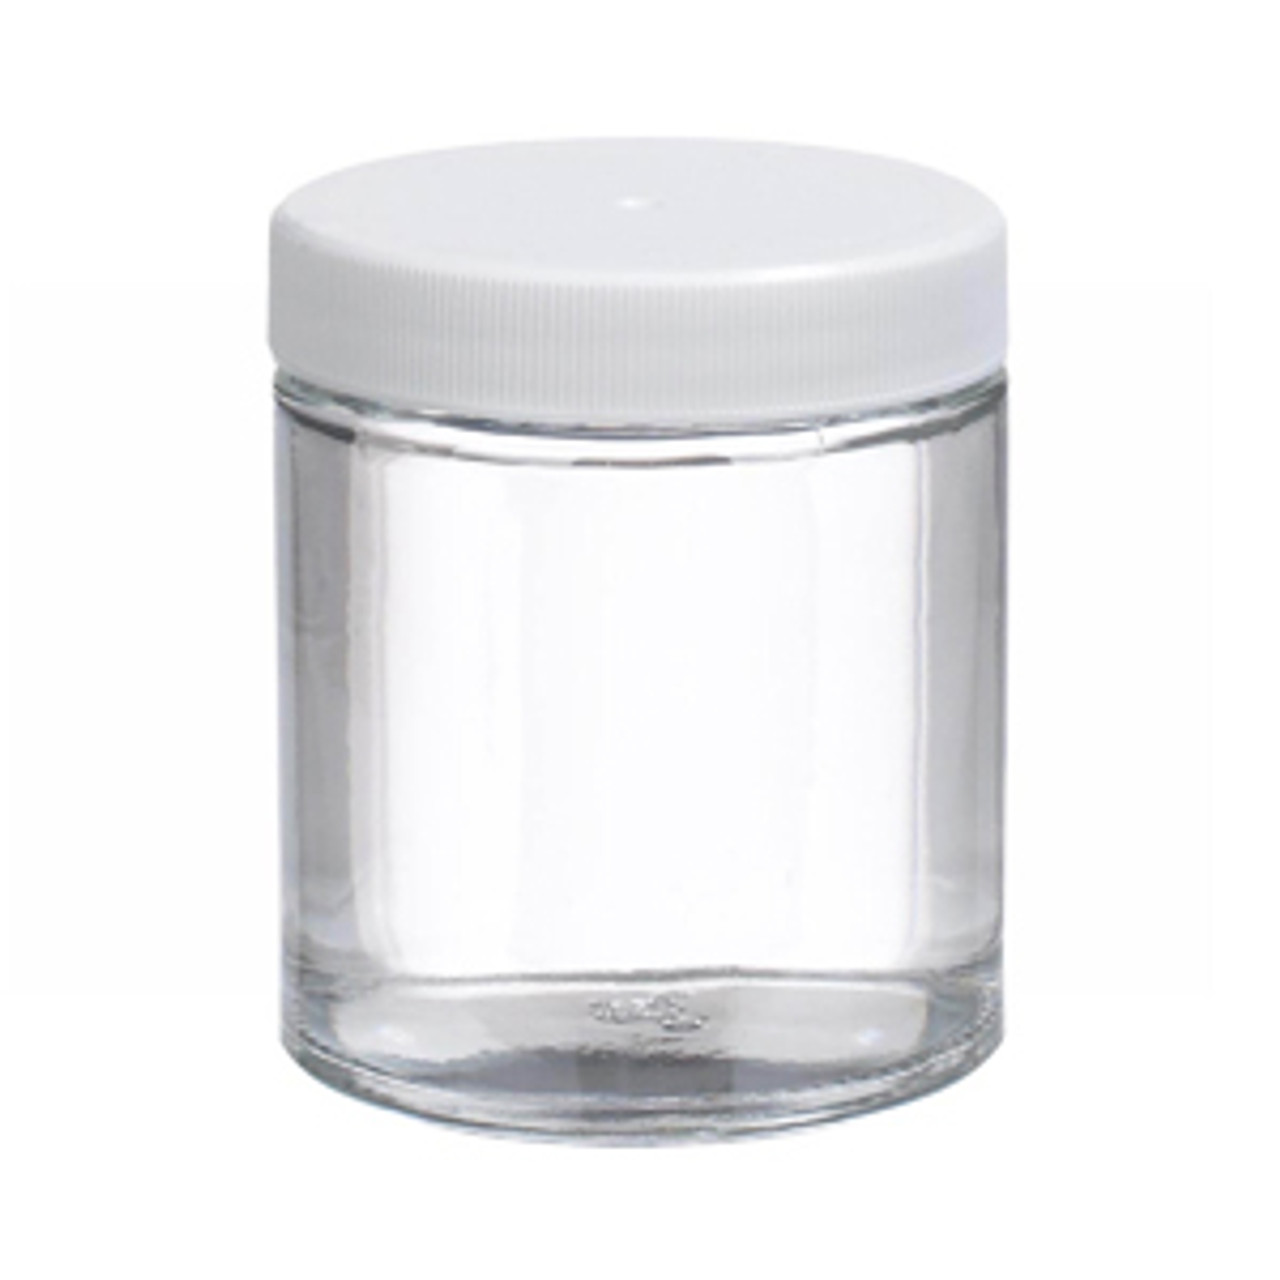 Clear Glass Jars, 6oz, Black Aluminum Foil Lined Caps, case/24